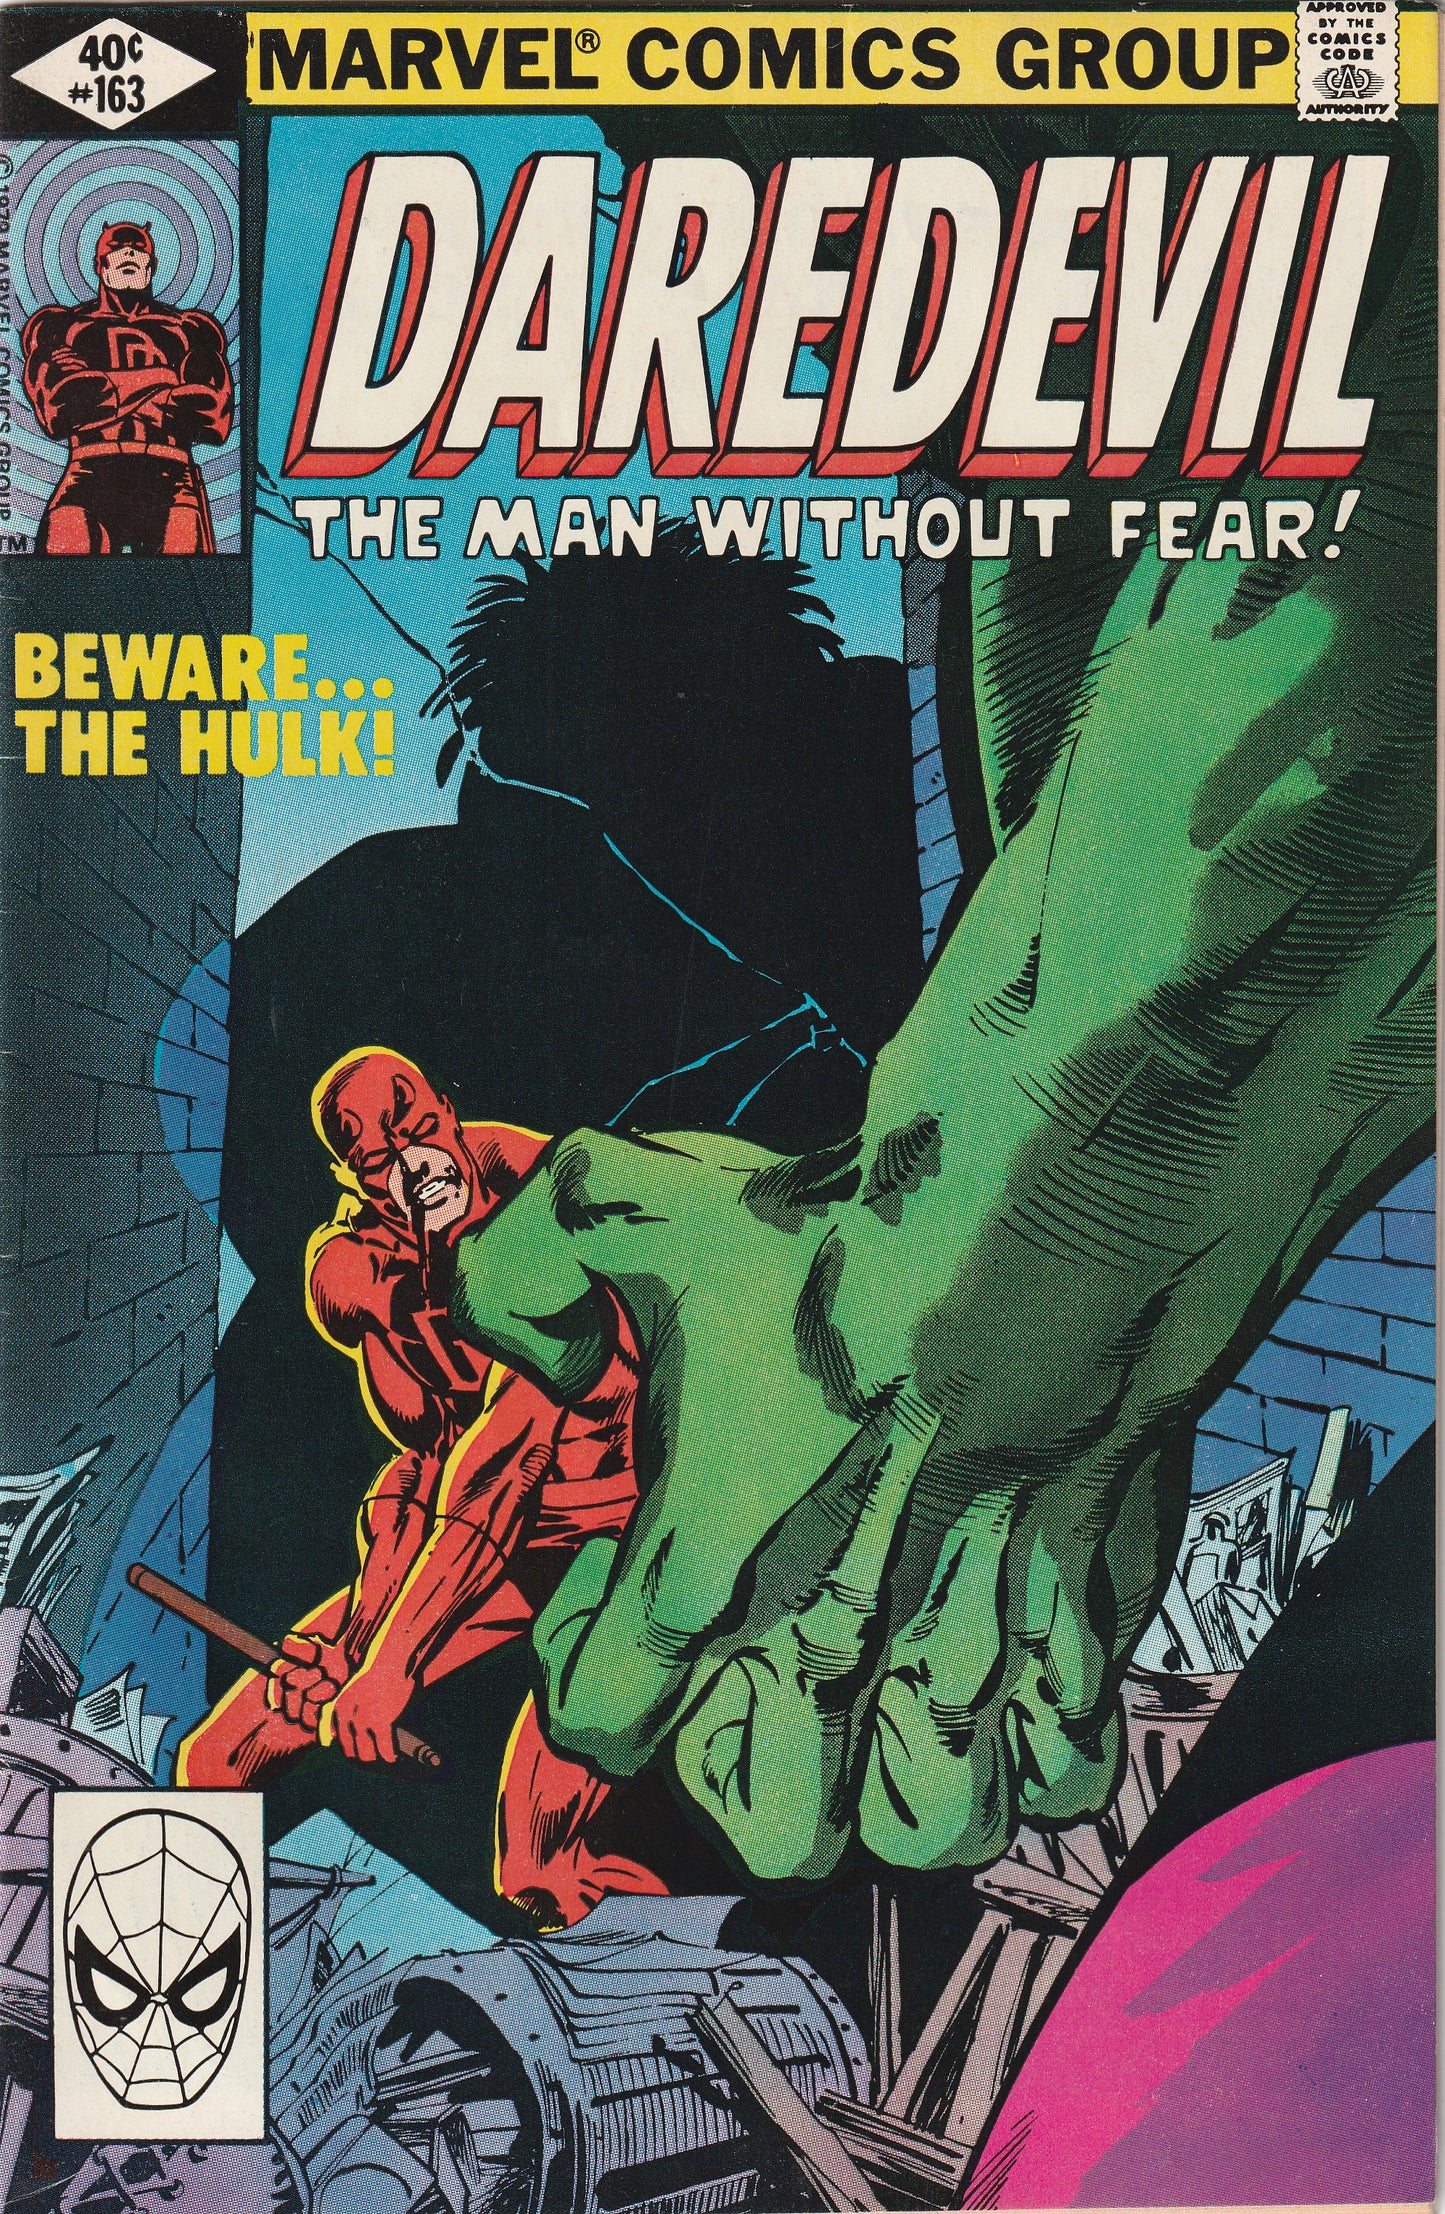 Daredevil #163 (1980) - vs Hulk